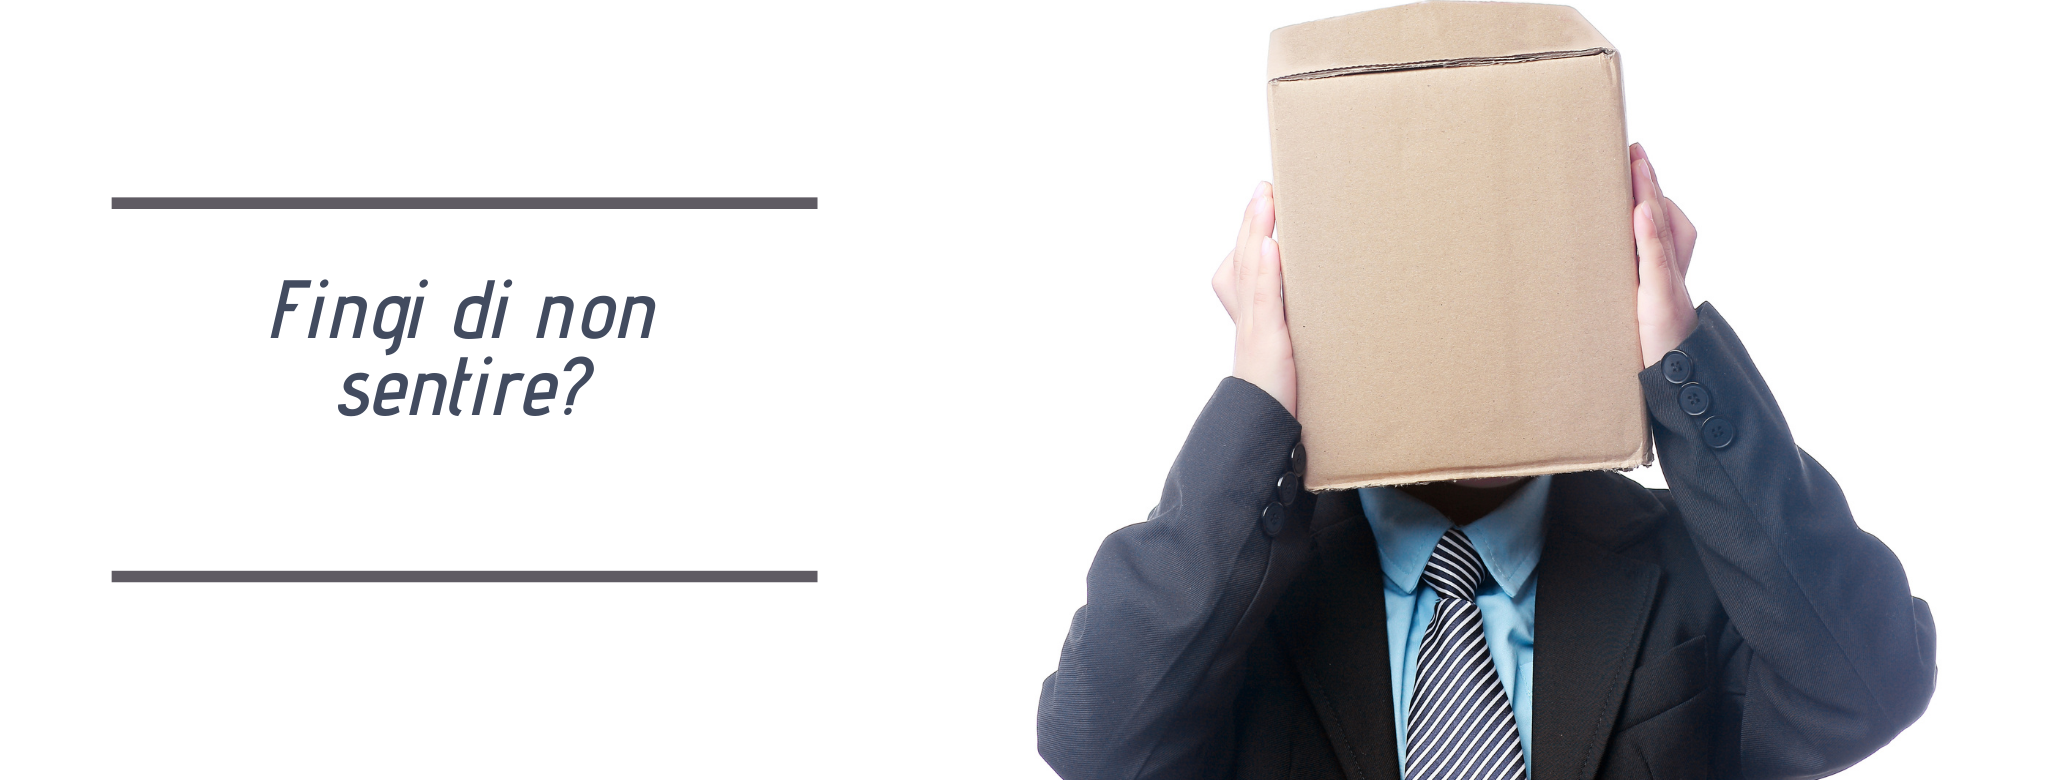 immagine: uomo con scatola in testa e scritta: fingi di non sentire?